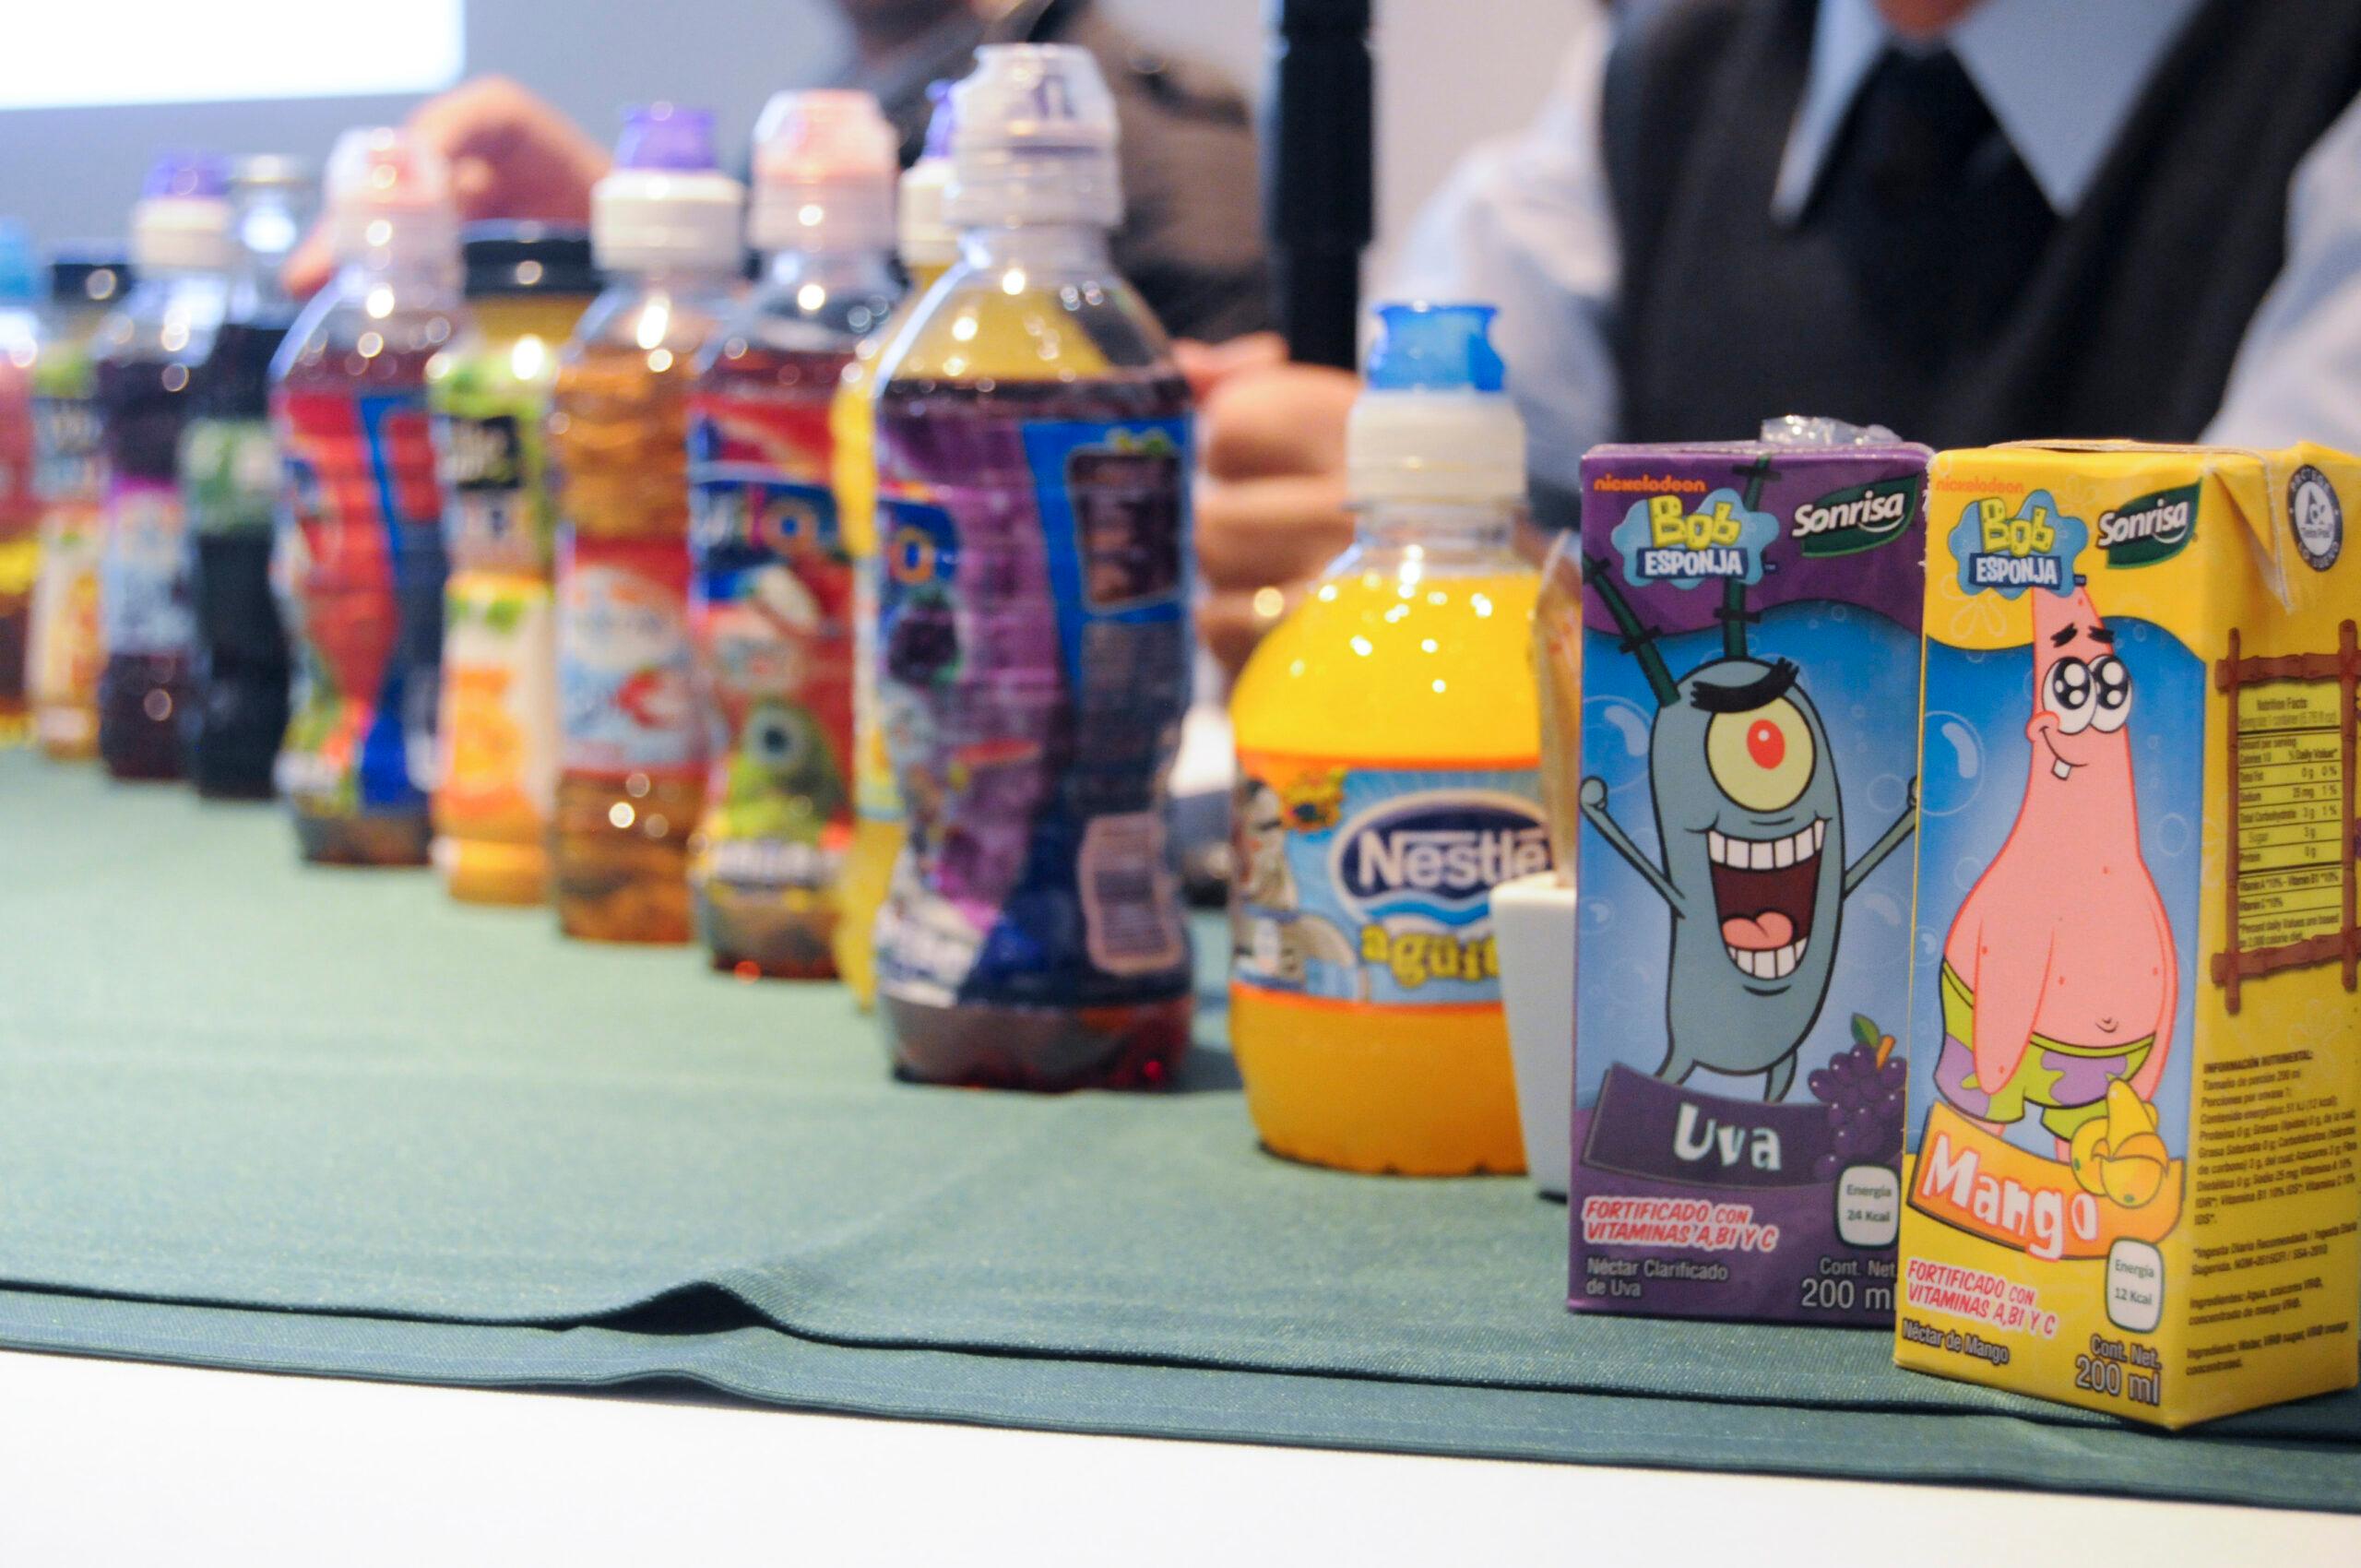 Instituto de Salud Pública reprueba reducir impuesto en bebidas azucaradas; propone aumentar su precio